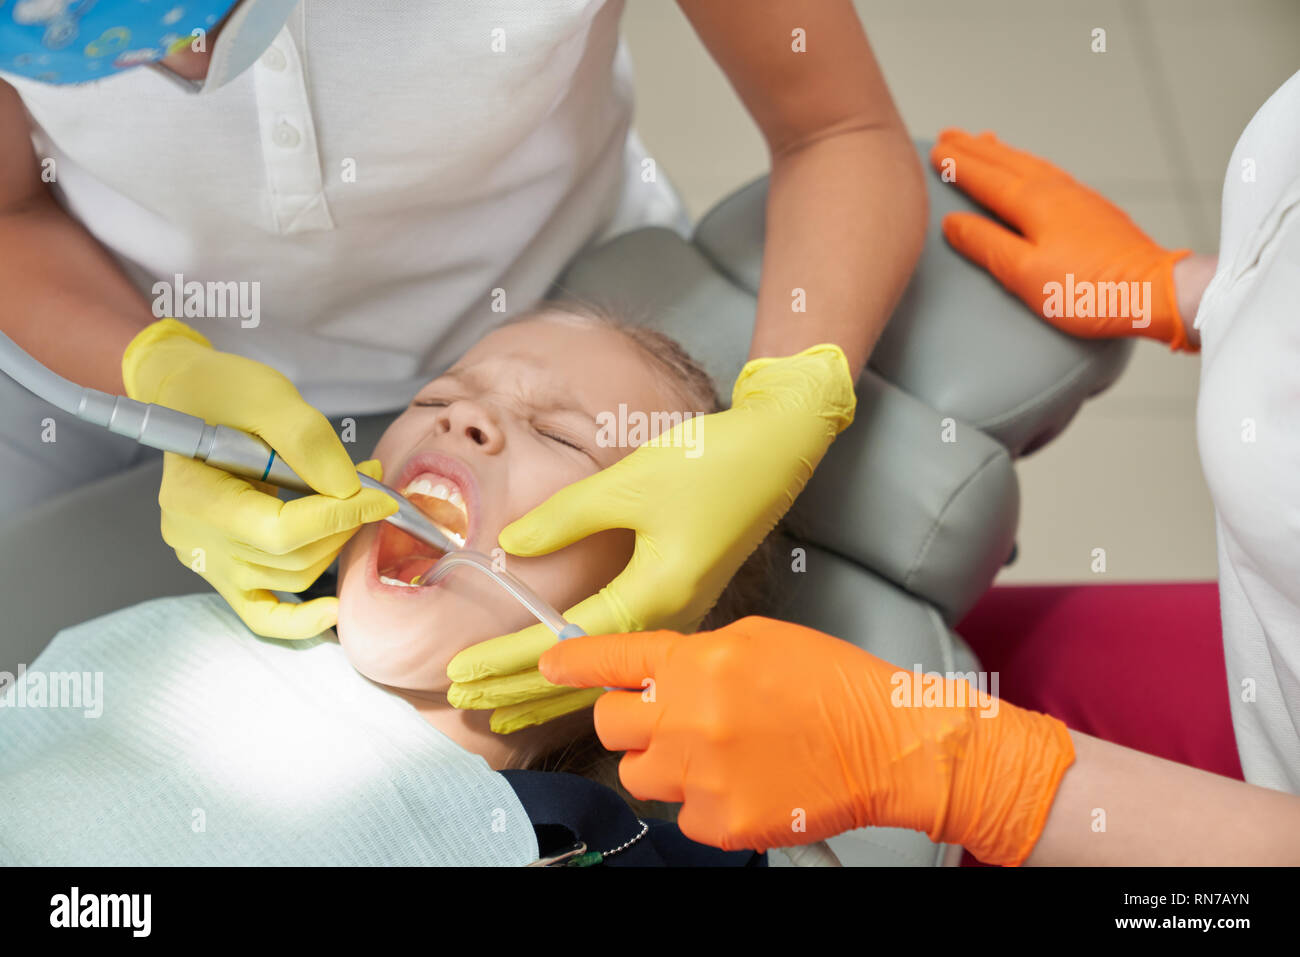 Bambino giacente sul riunito dentale con bocca aperta durante la procedura dolorosa in studio dentistico. Medici di sesso femminile il trattamento di denti e rimozione di carie del paziente. Concetto di odontoiatria e la paura. Foto Stock